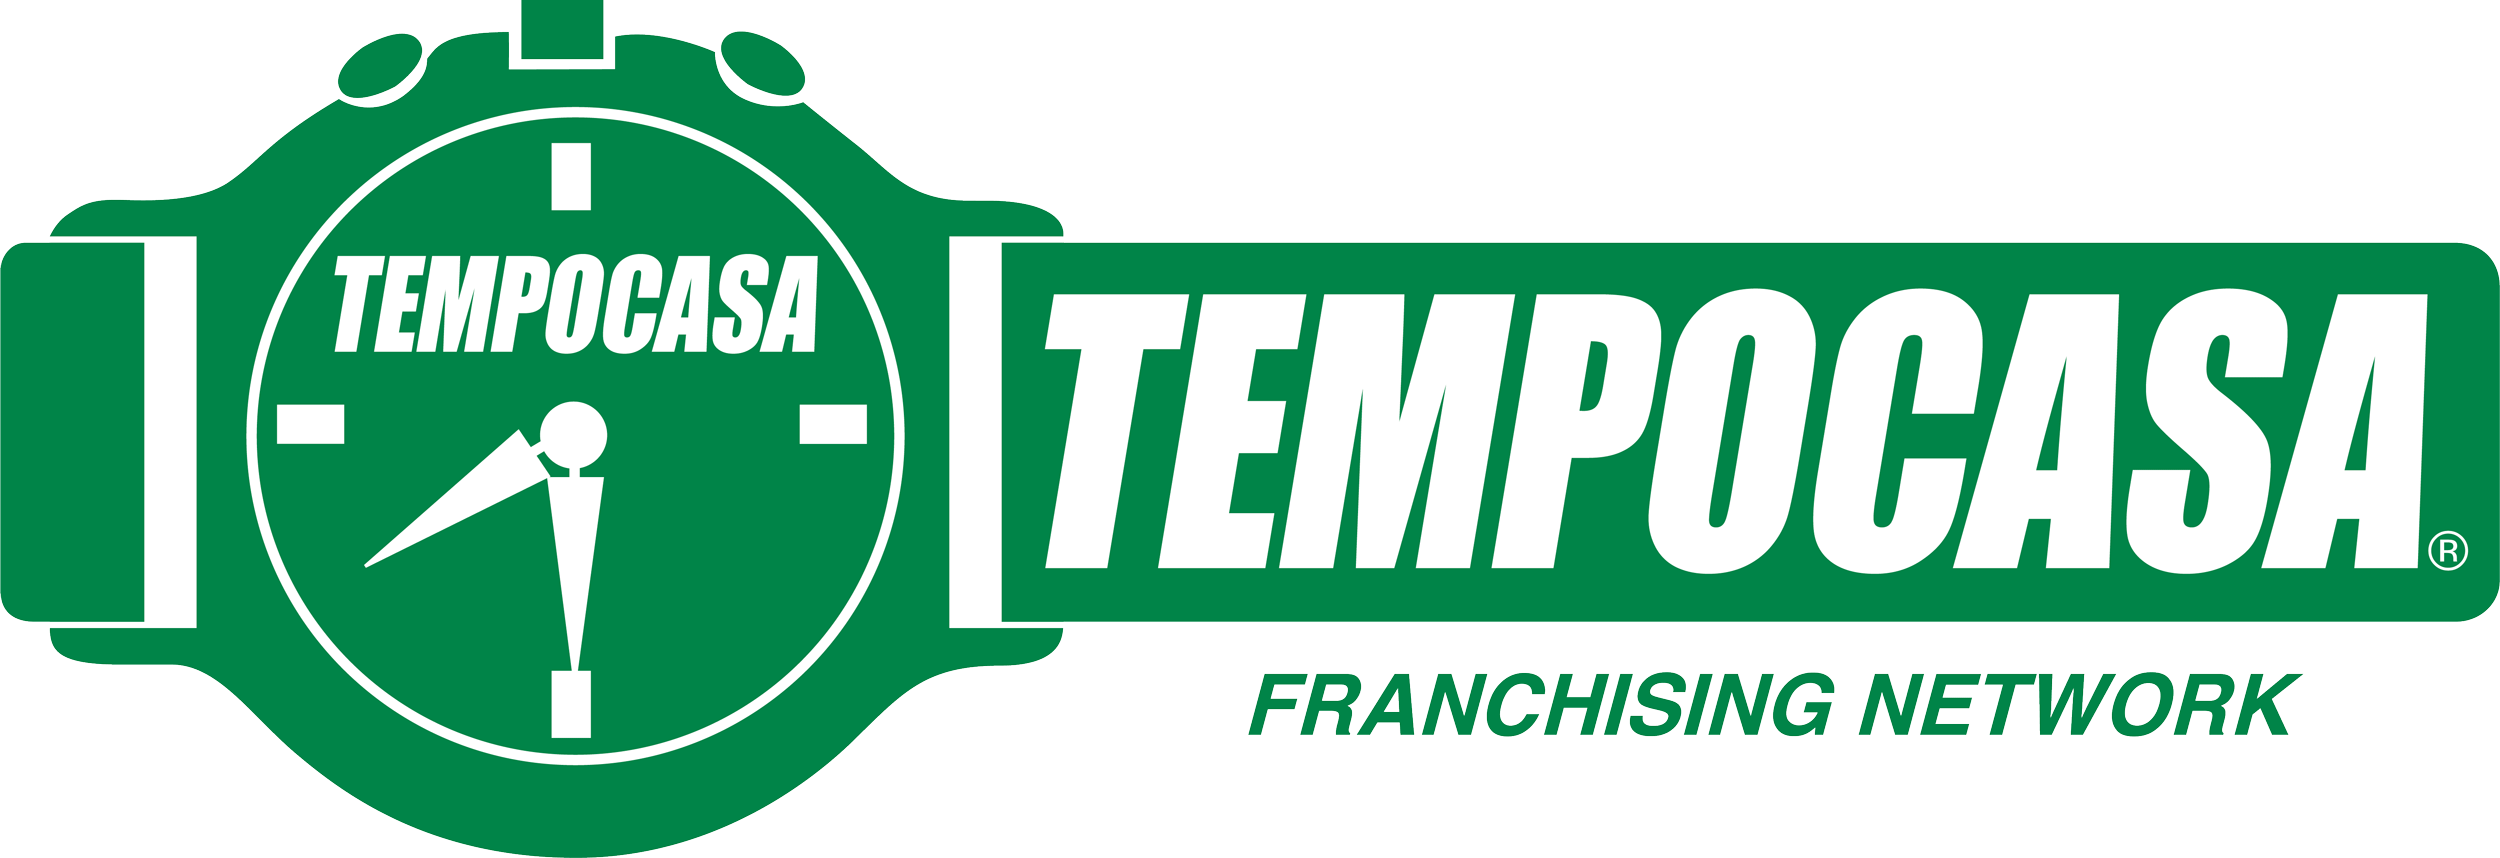 Tempocasa Pescara - Tempocasa